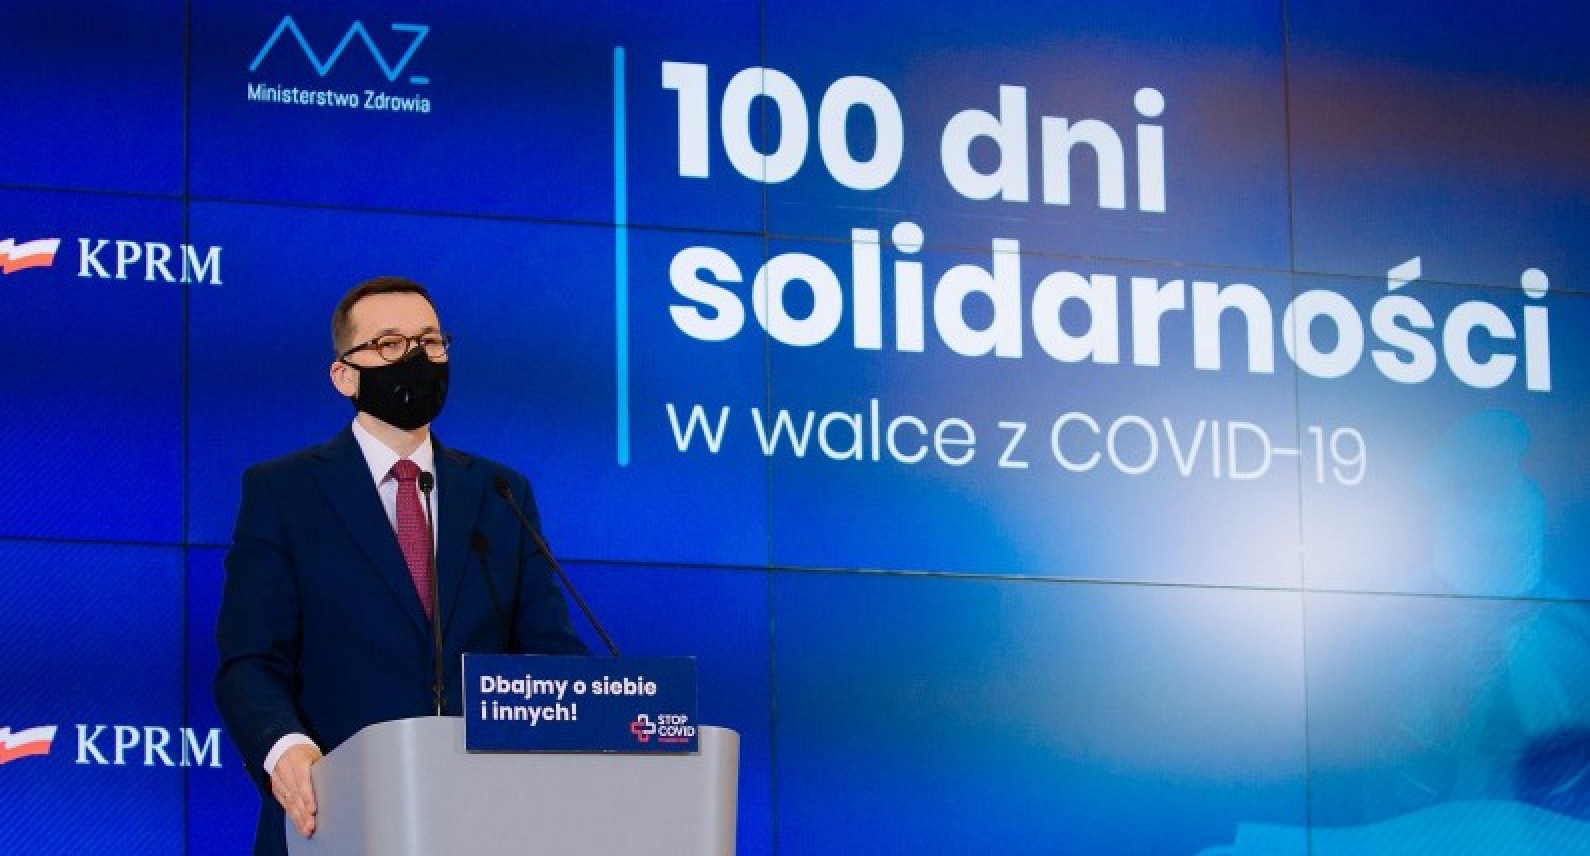 Świąteczne obostrzenia w Polsce: rząd planuje wprowadzić limit osób przy wigilijnym stole